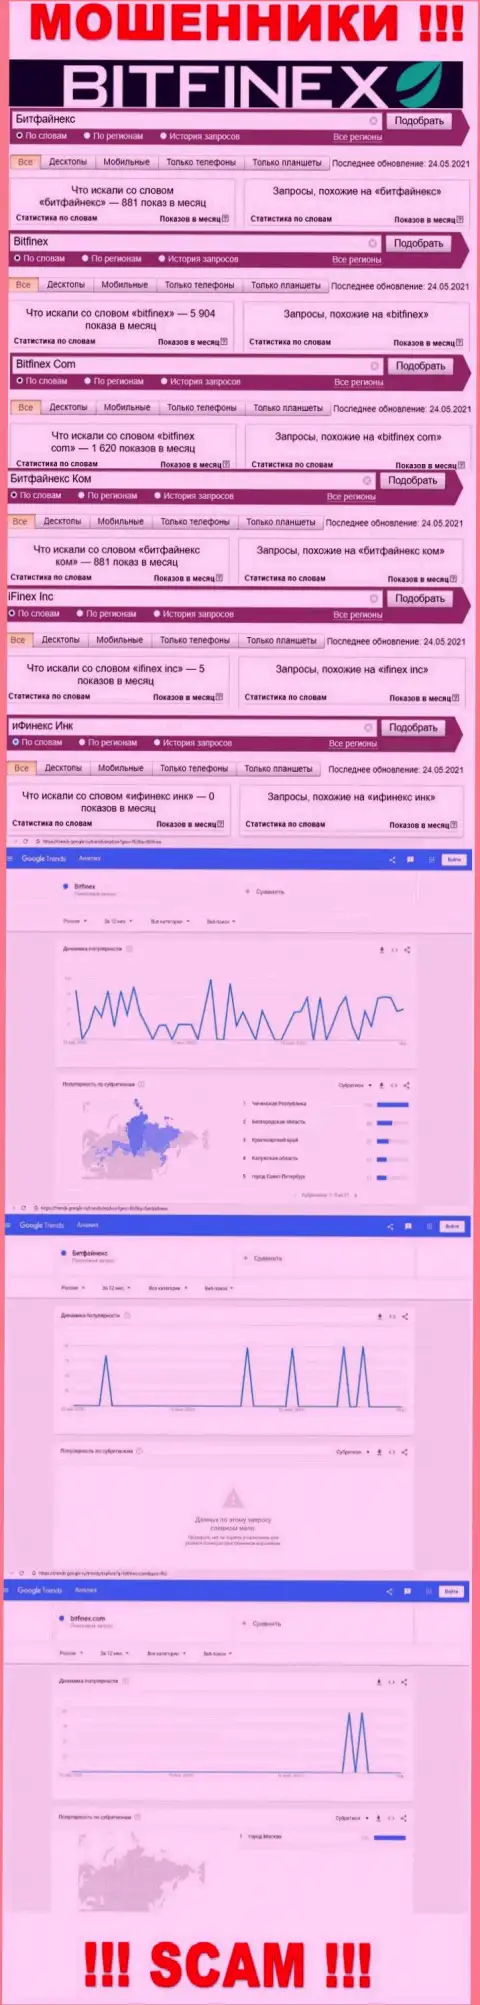 Количество поисковых запросов в поисковиках сети Интернет по бренду мошенников Bitfinex